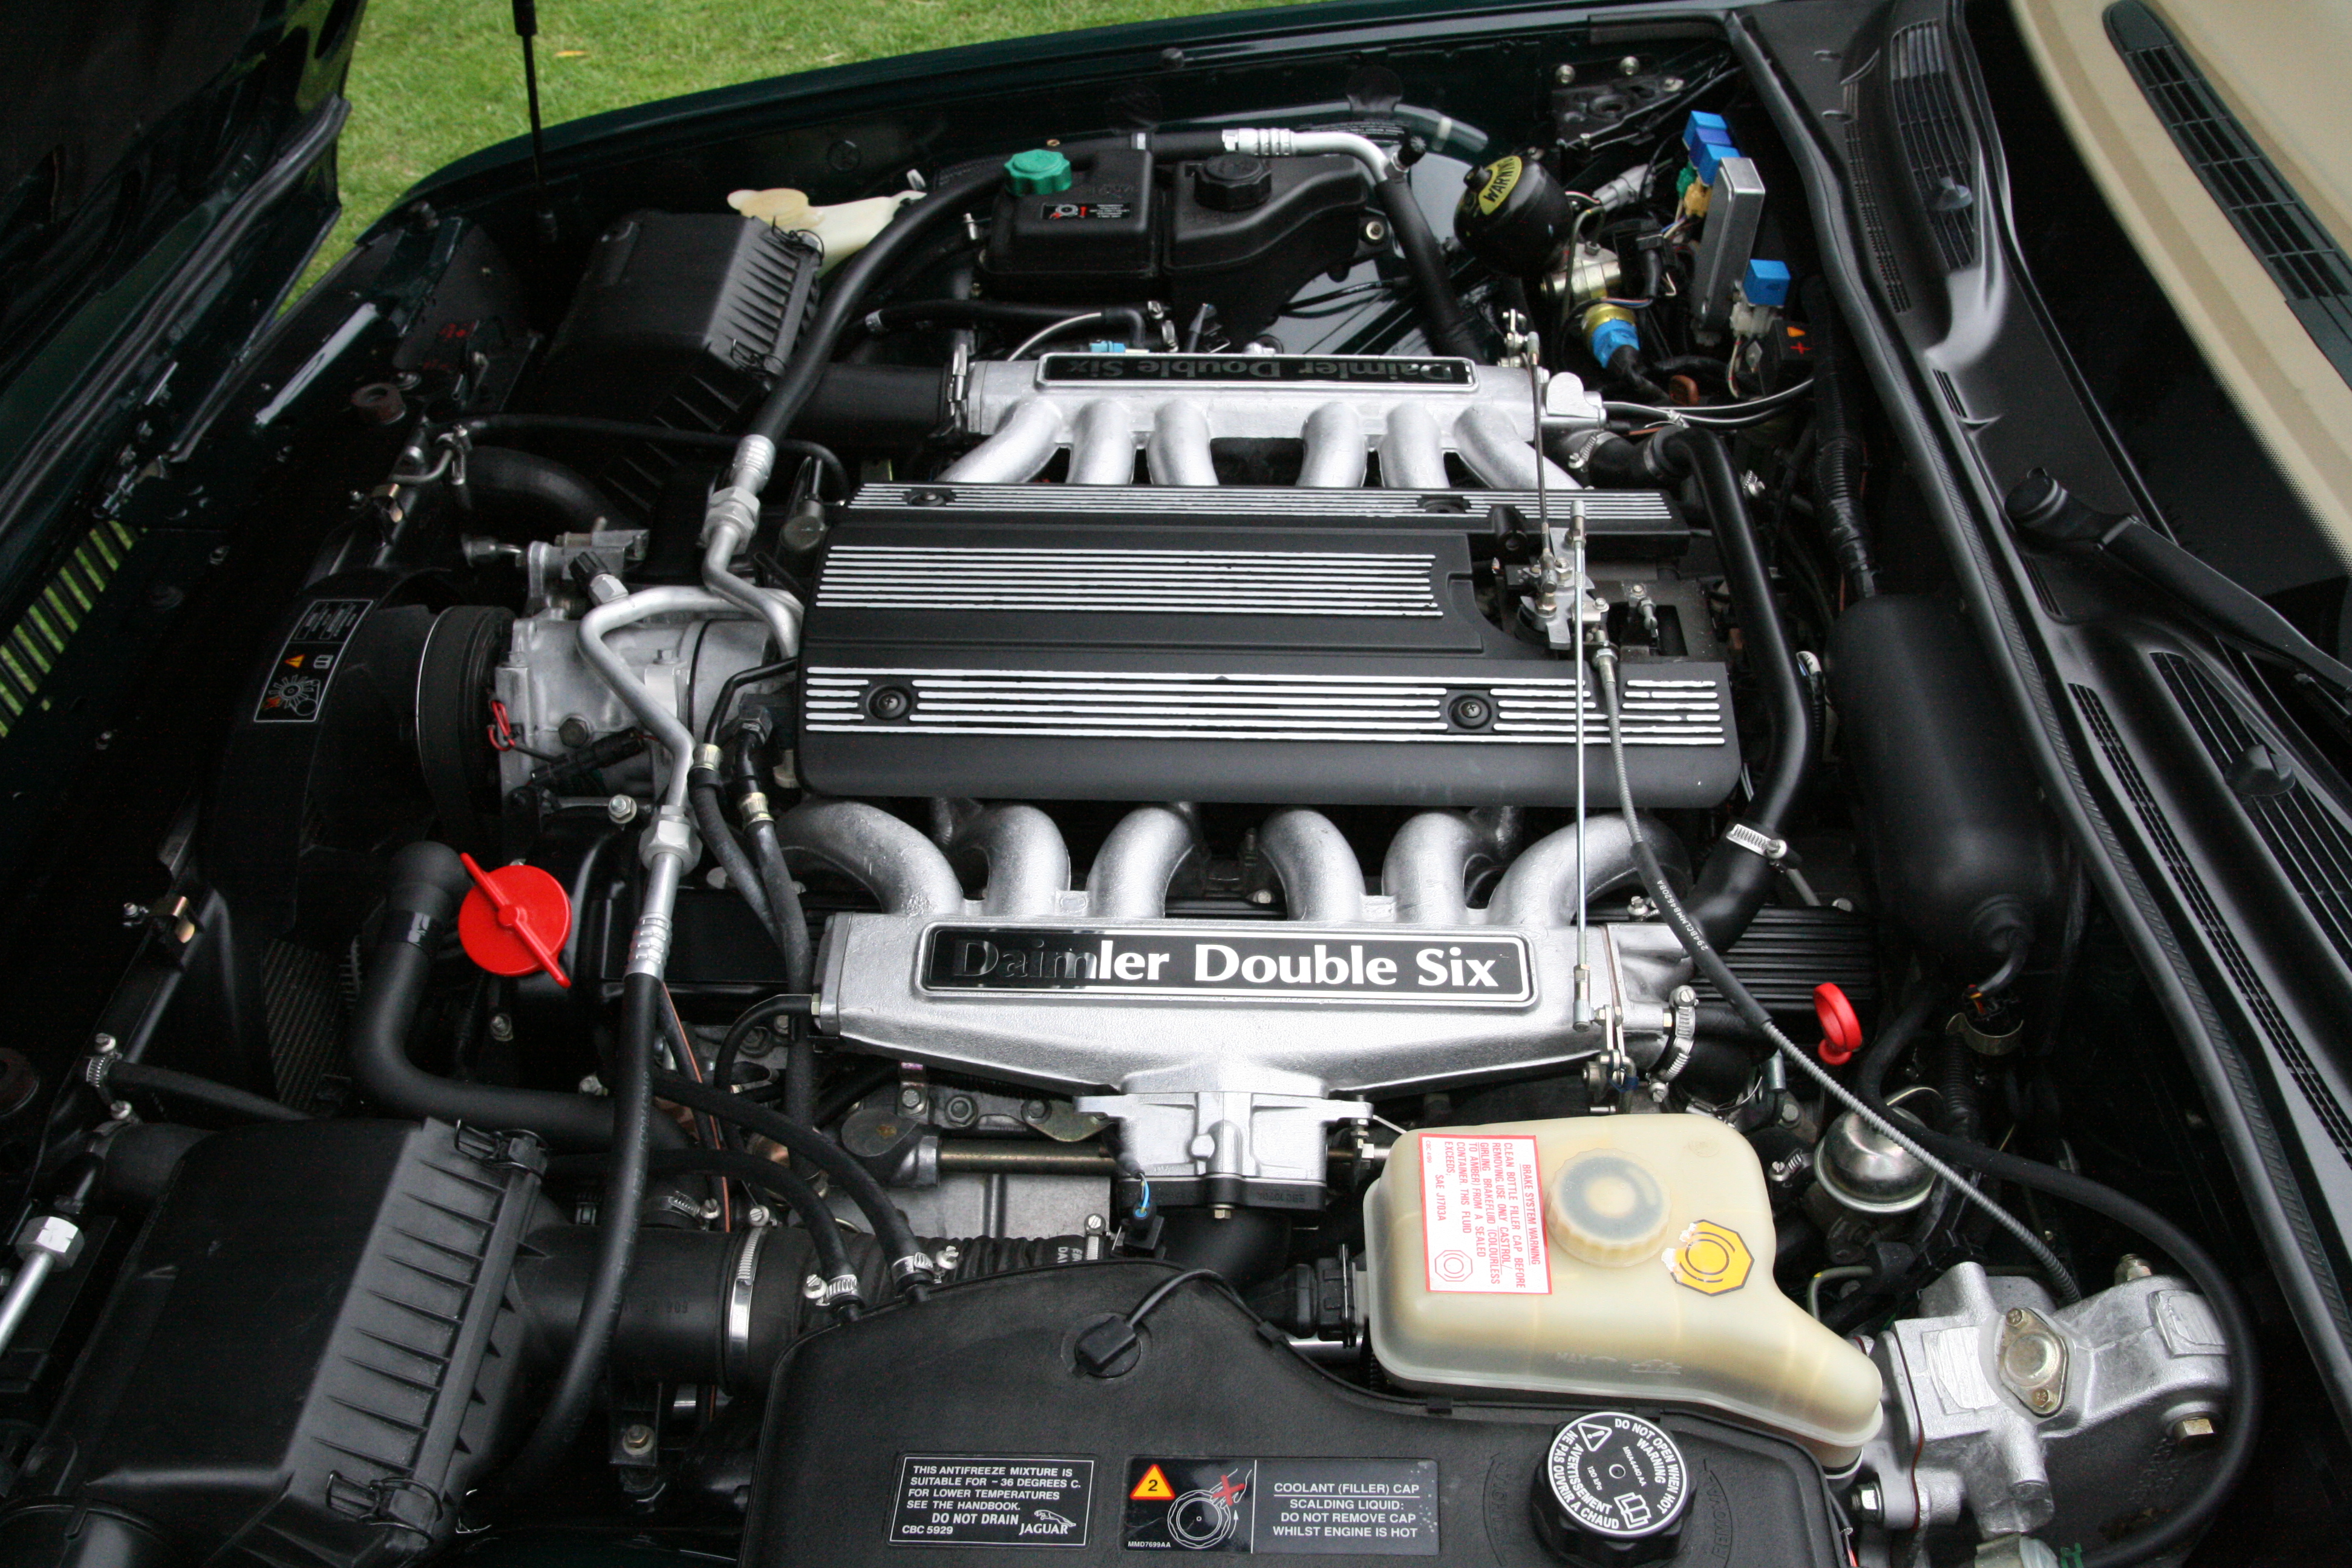 File:Jaguar Daimler Double Six 6.0 liter V12 engine (1994).jpg ...